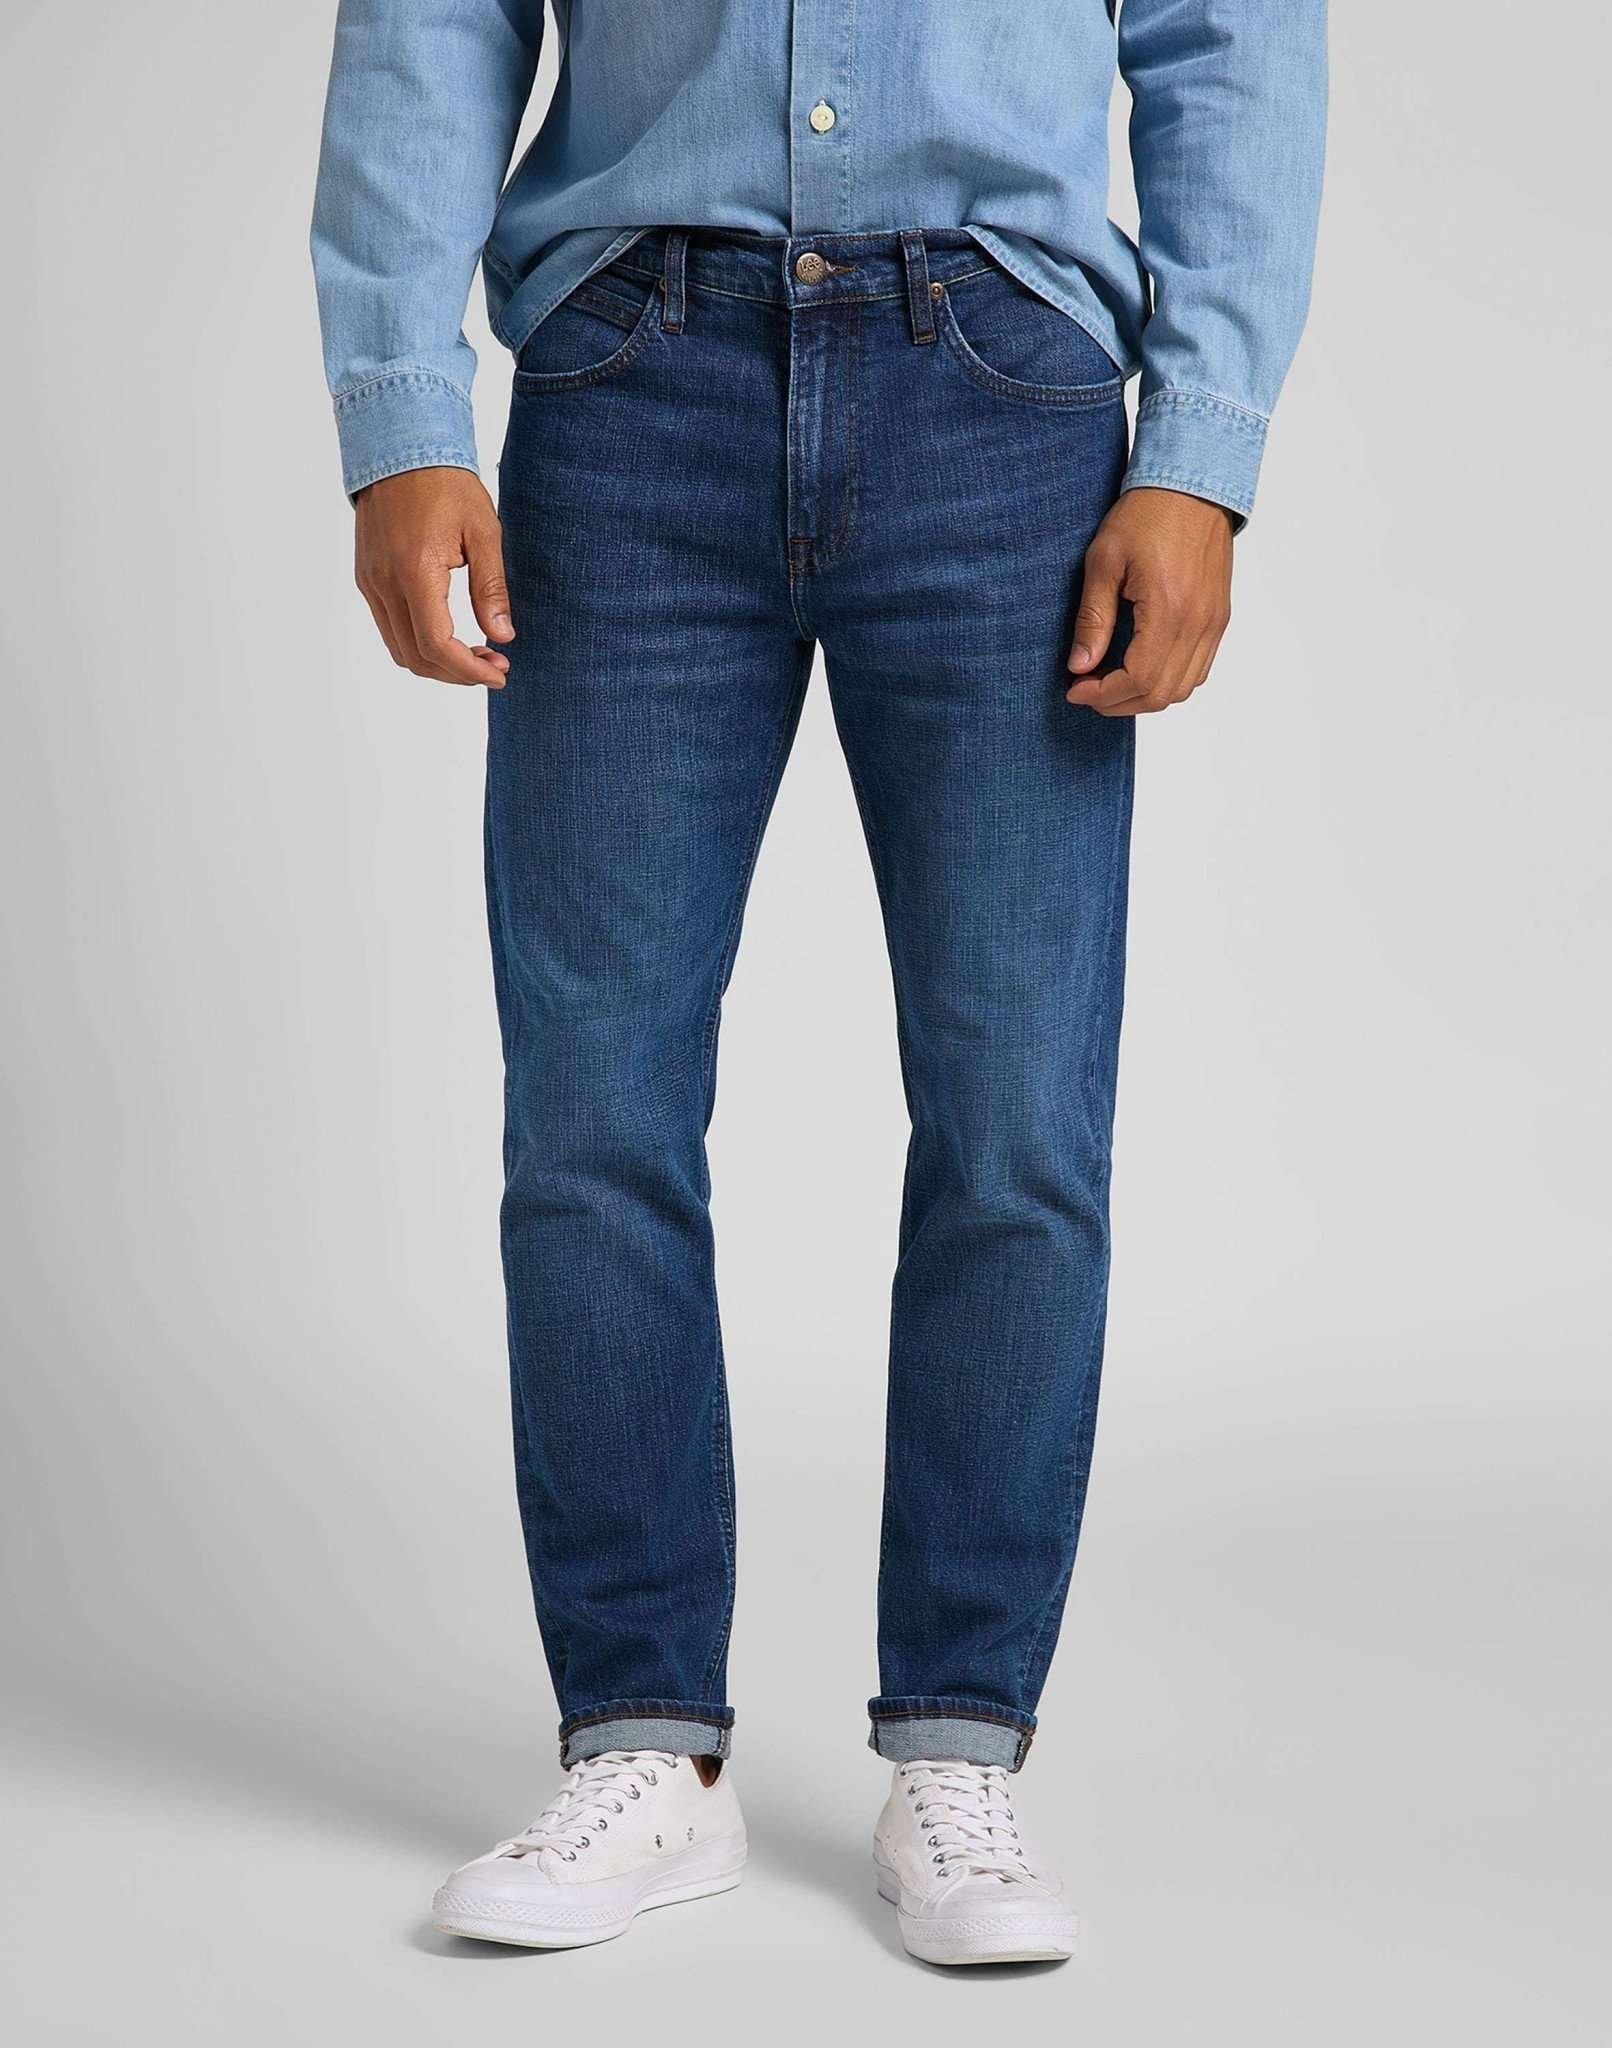 Jeans Straight Leg Austin Herren Blau Denim L34/W38 von Lee